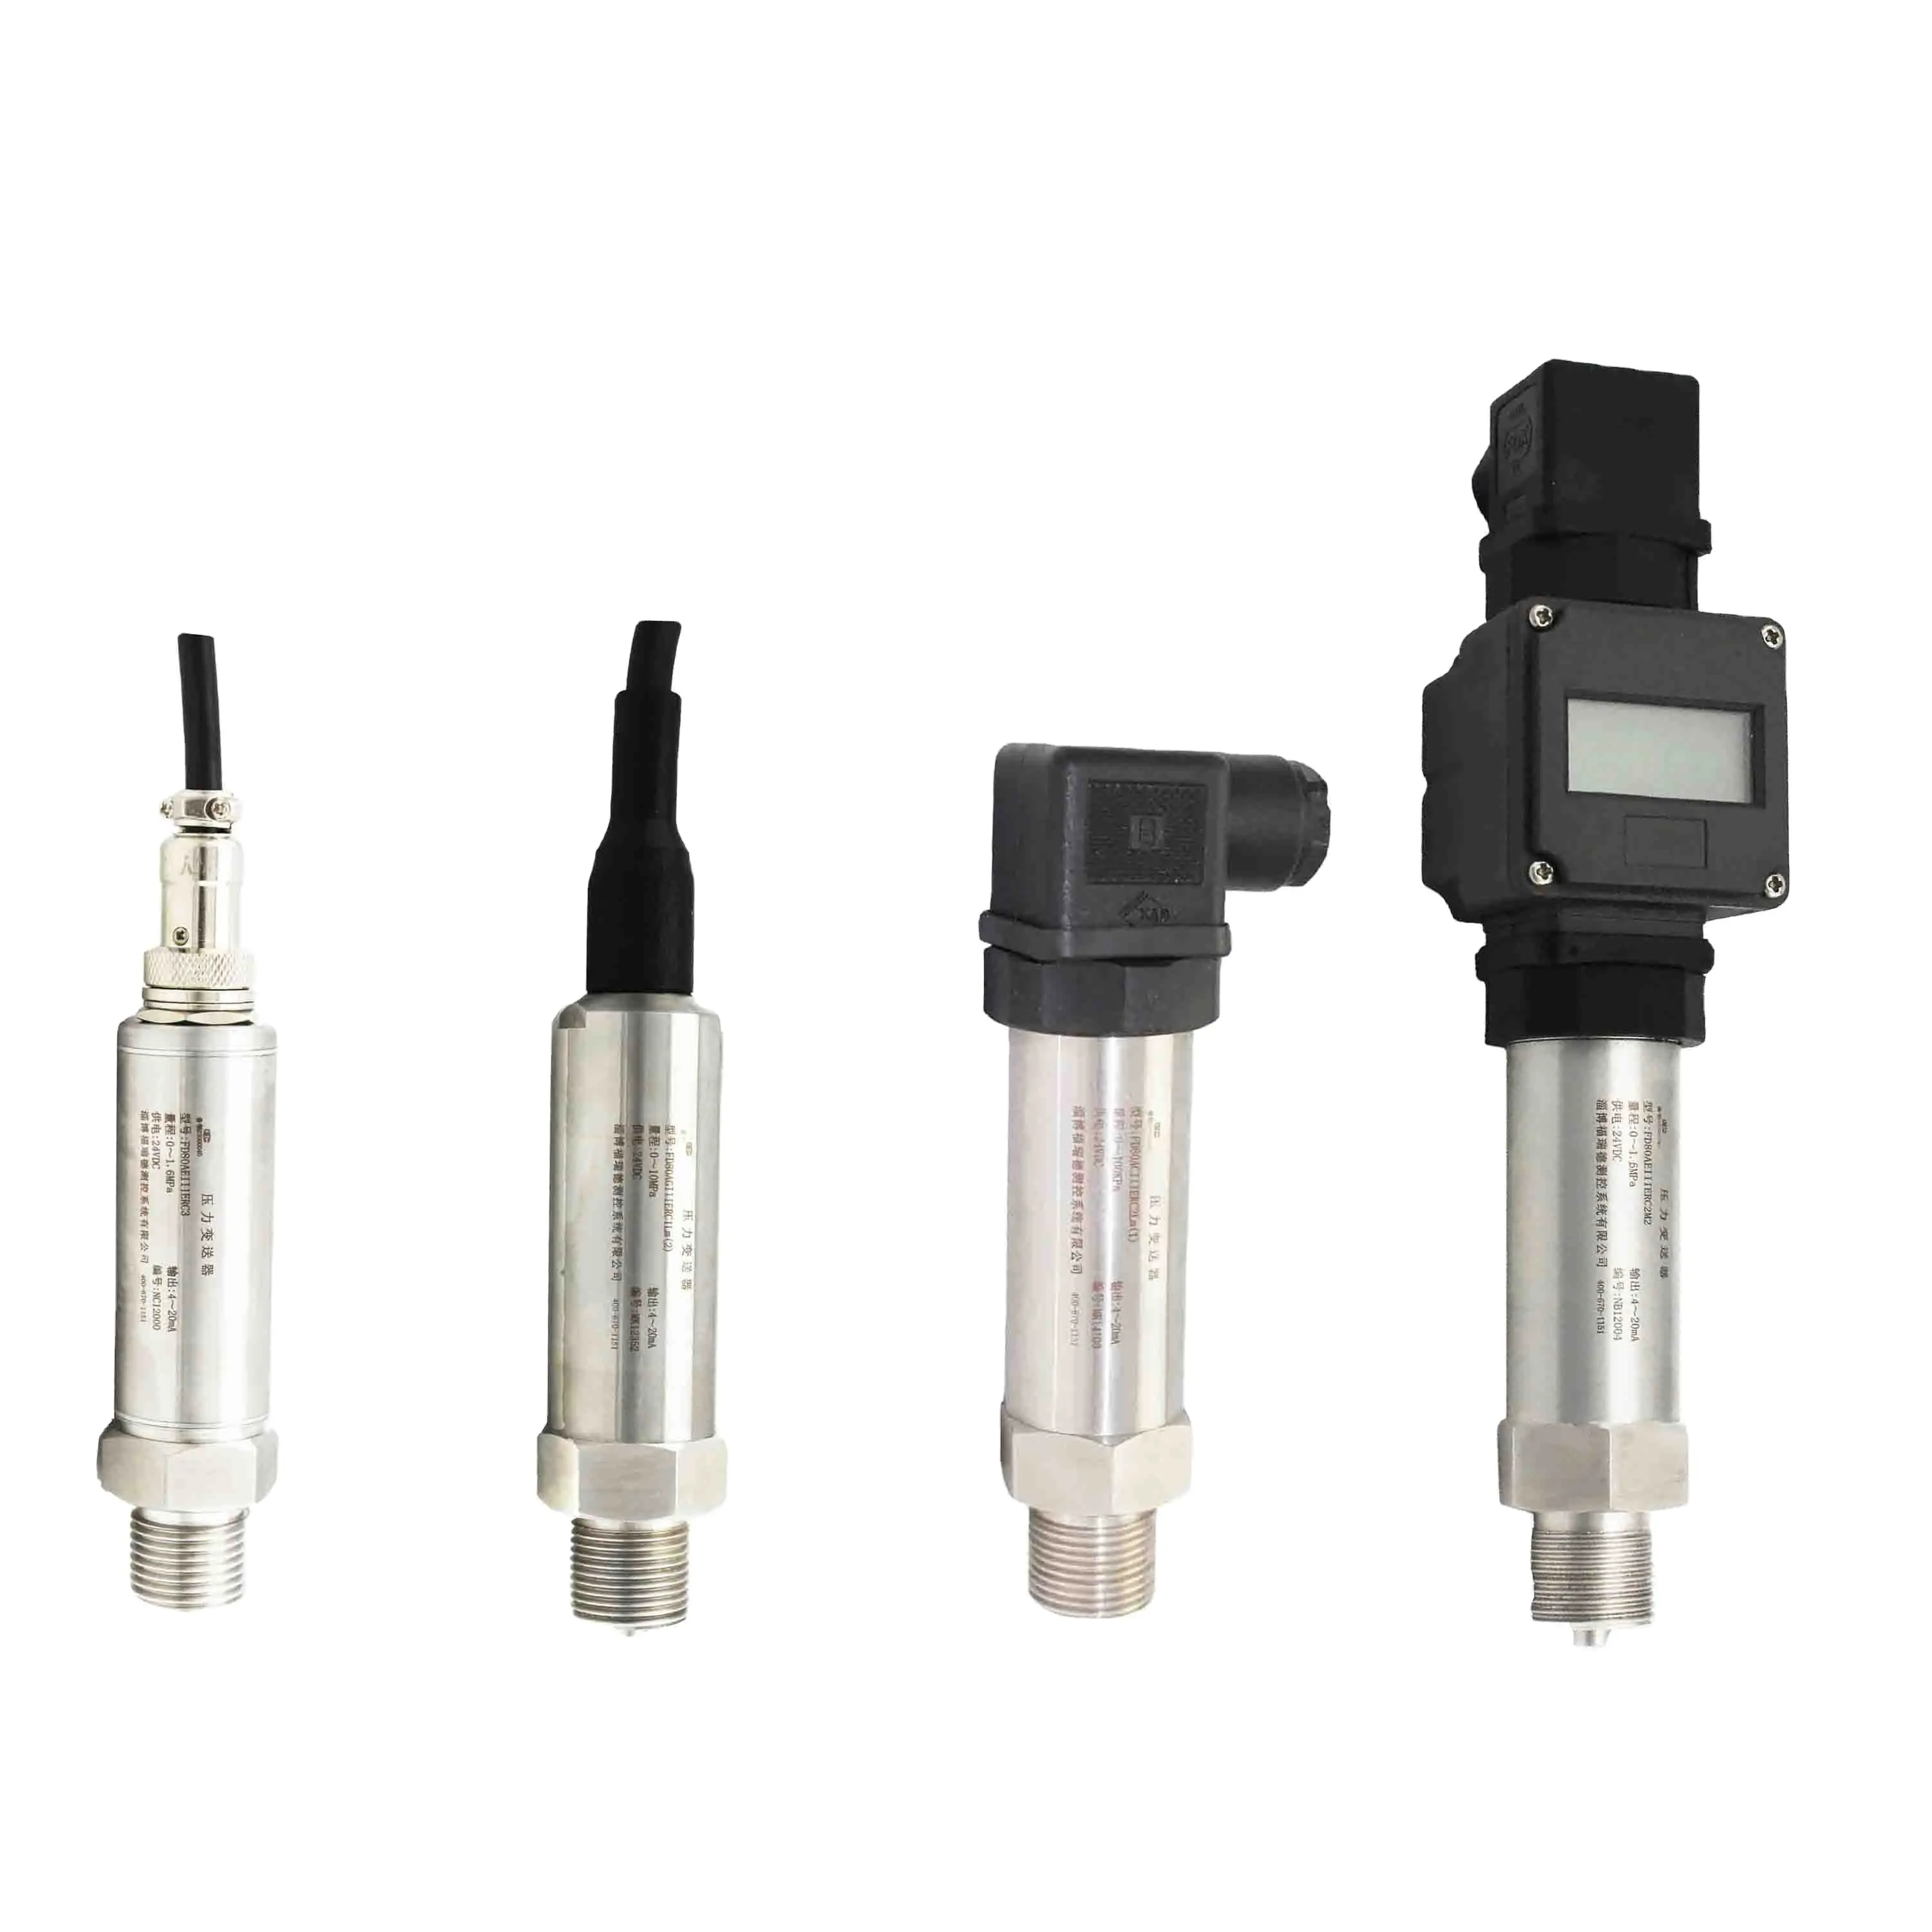 4-20ma rs485 smart digital absolute air oil water trasmettitore di pressione idraulica prezzo